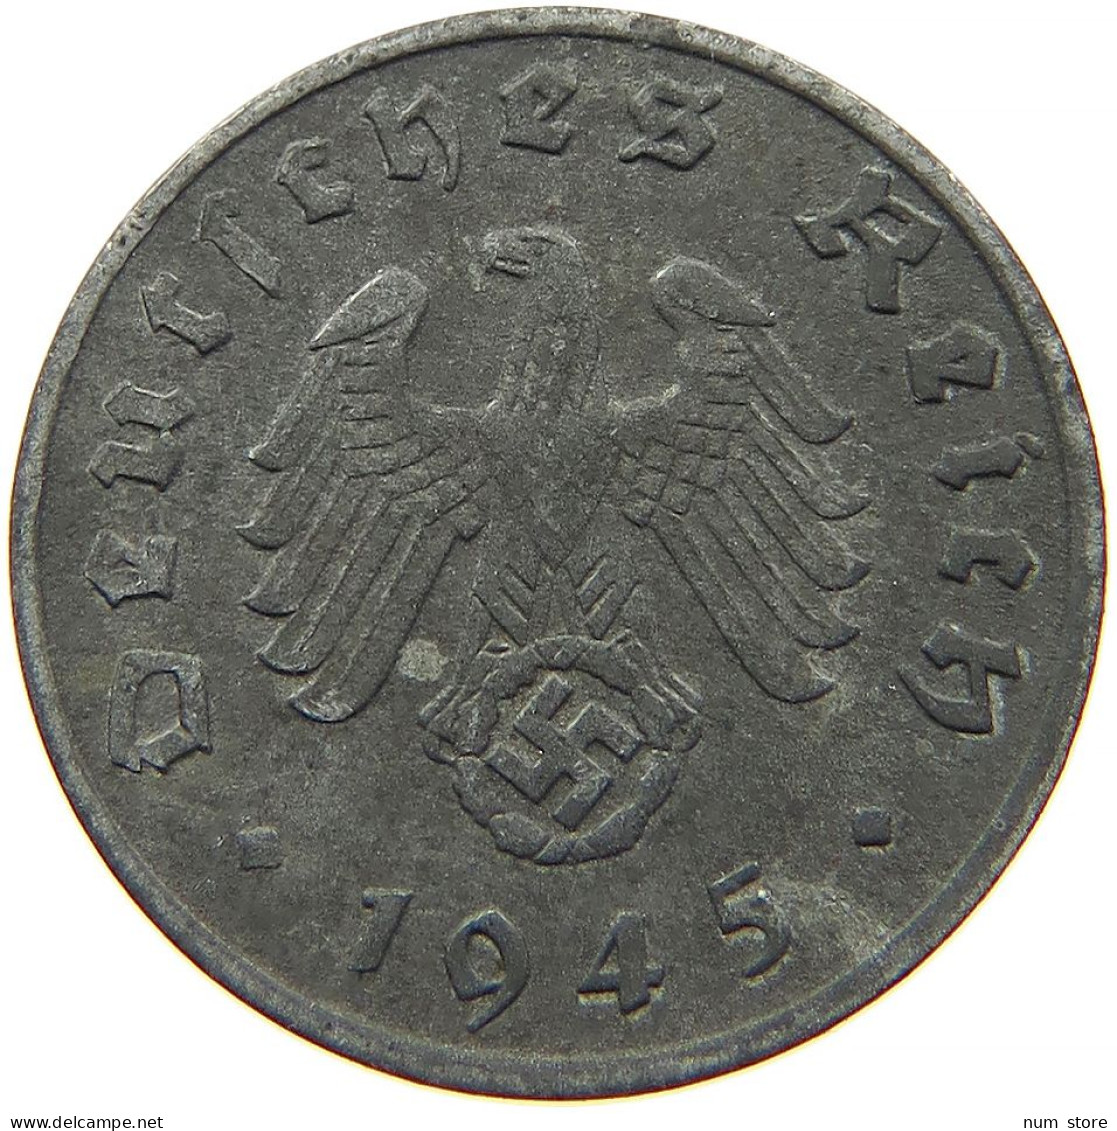 GERMANY 1 REICHSPFENNIG 1945 E #t030 0481 - 1 Reichspfennig